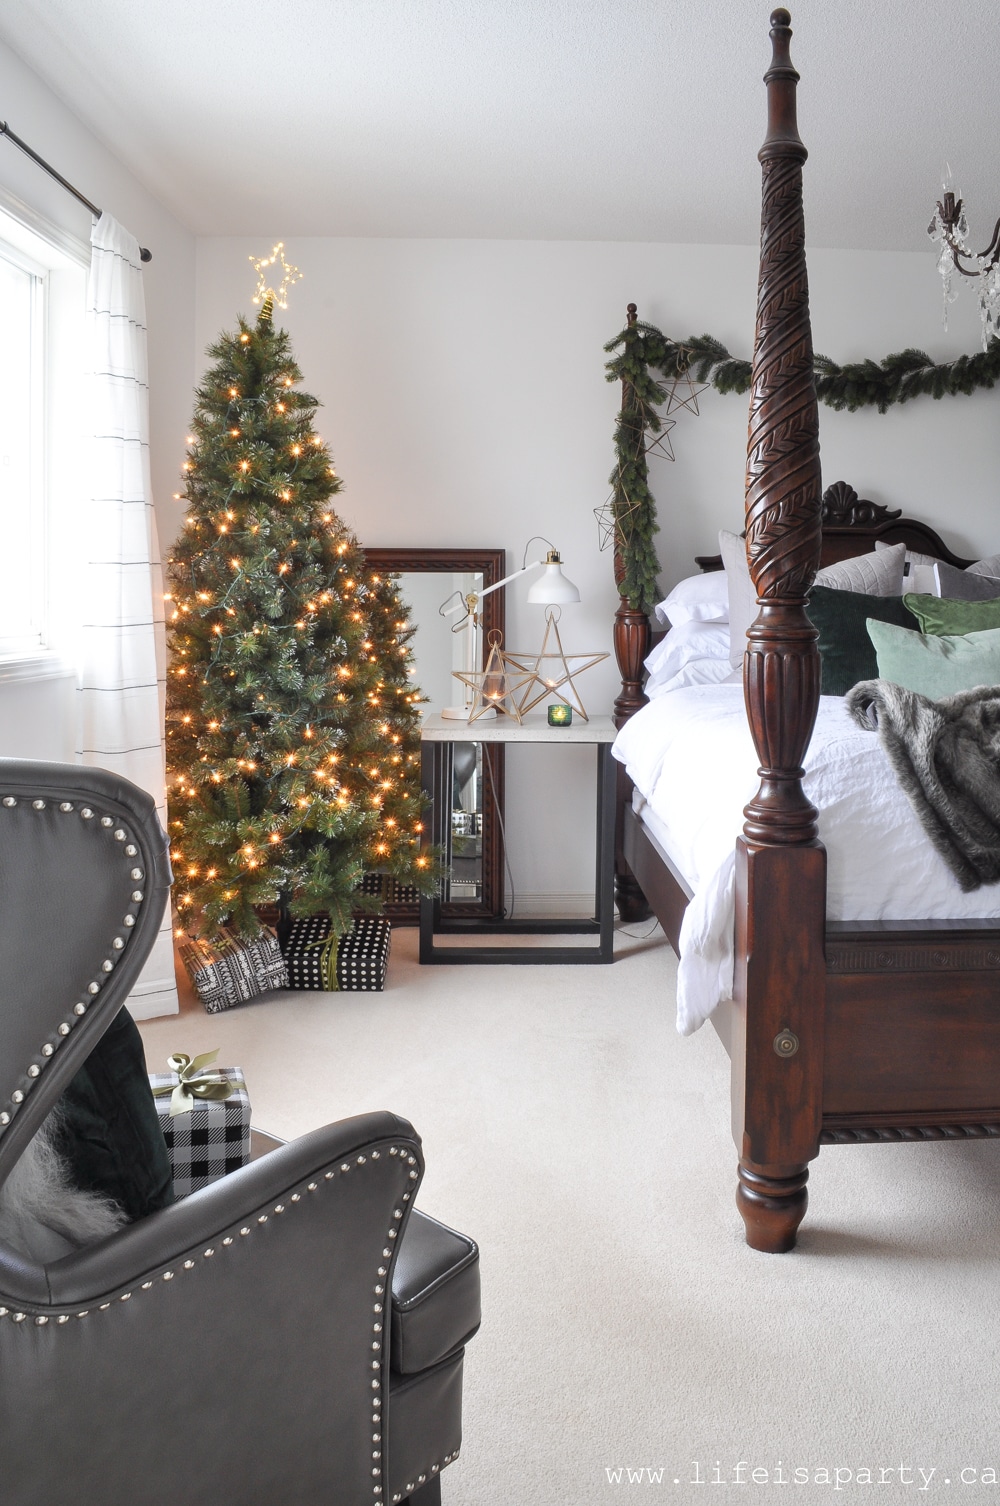 Christmas tree in bedroom